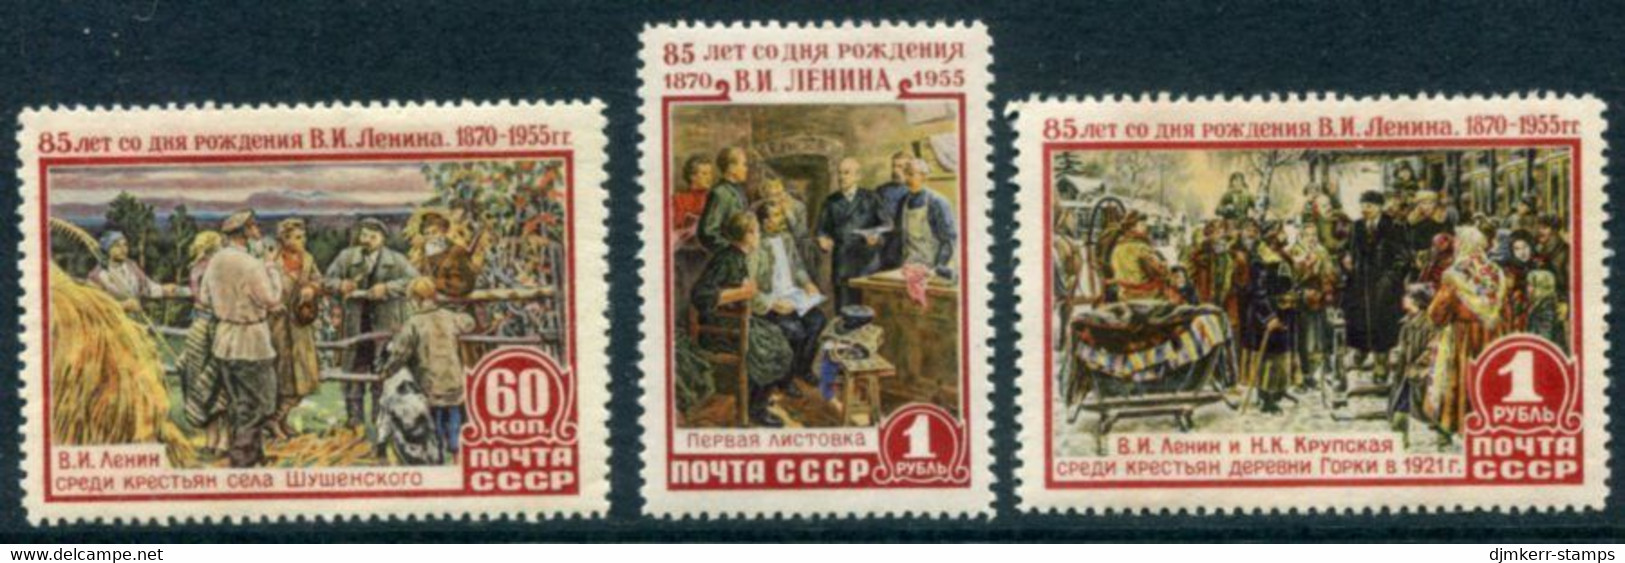 SOVIET UNION 1955 Lenin Birth Anniversary MNH / **.  Michel 1756-58 - Ungebraucht